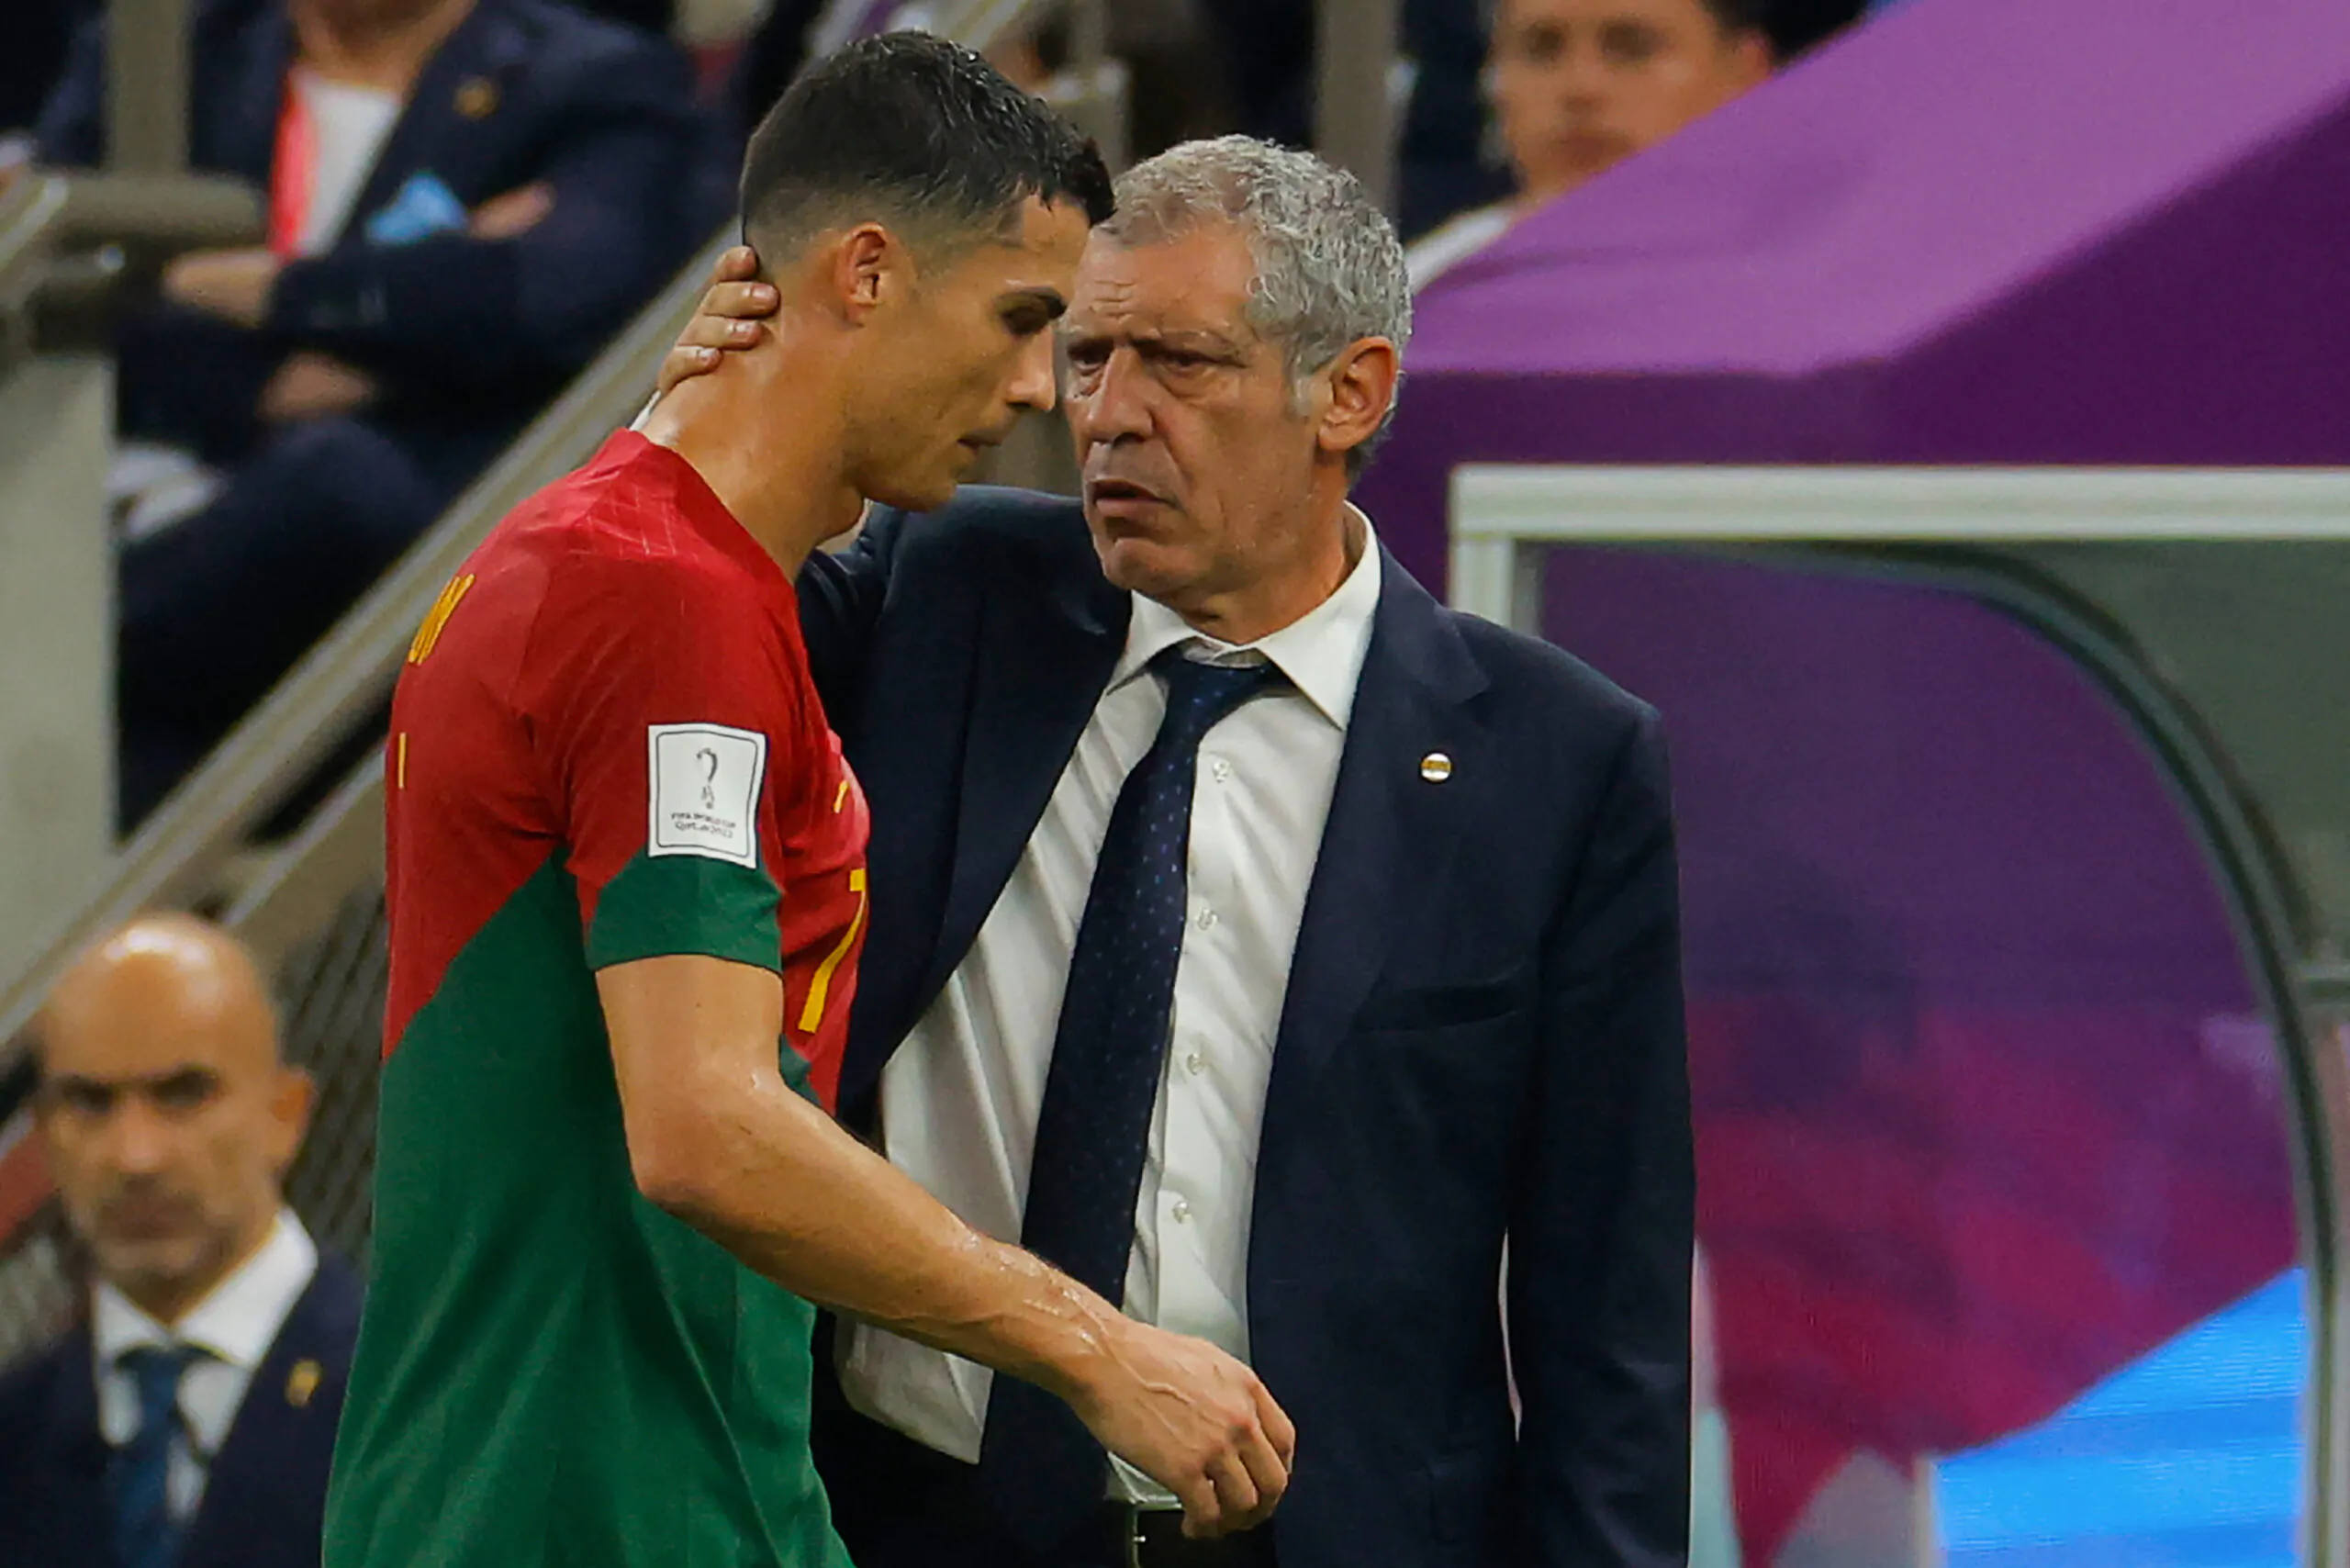 UFFICIALE – Addio Portogallo, c’è la decisione dopo i Mondiali!